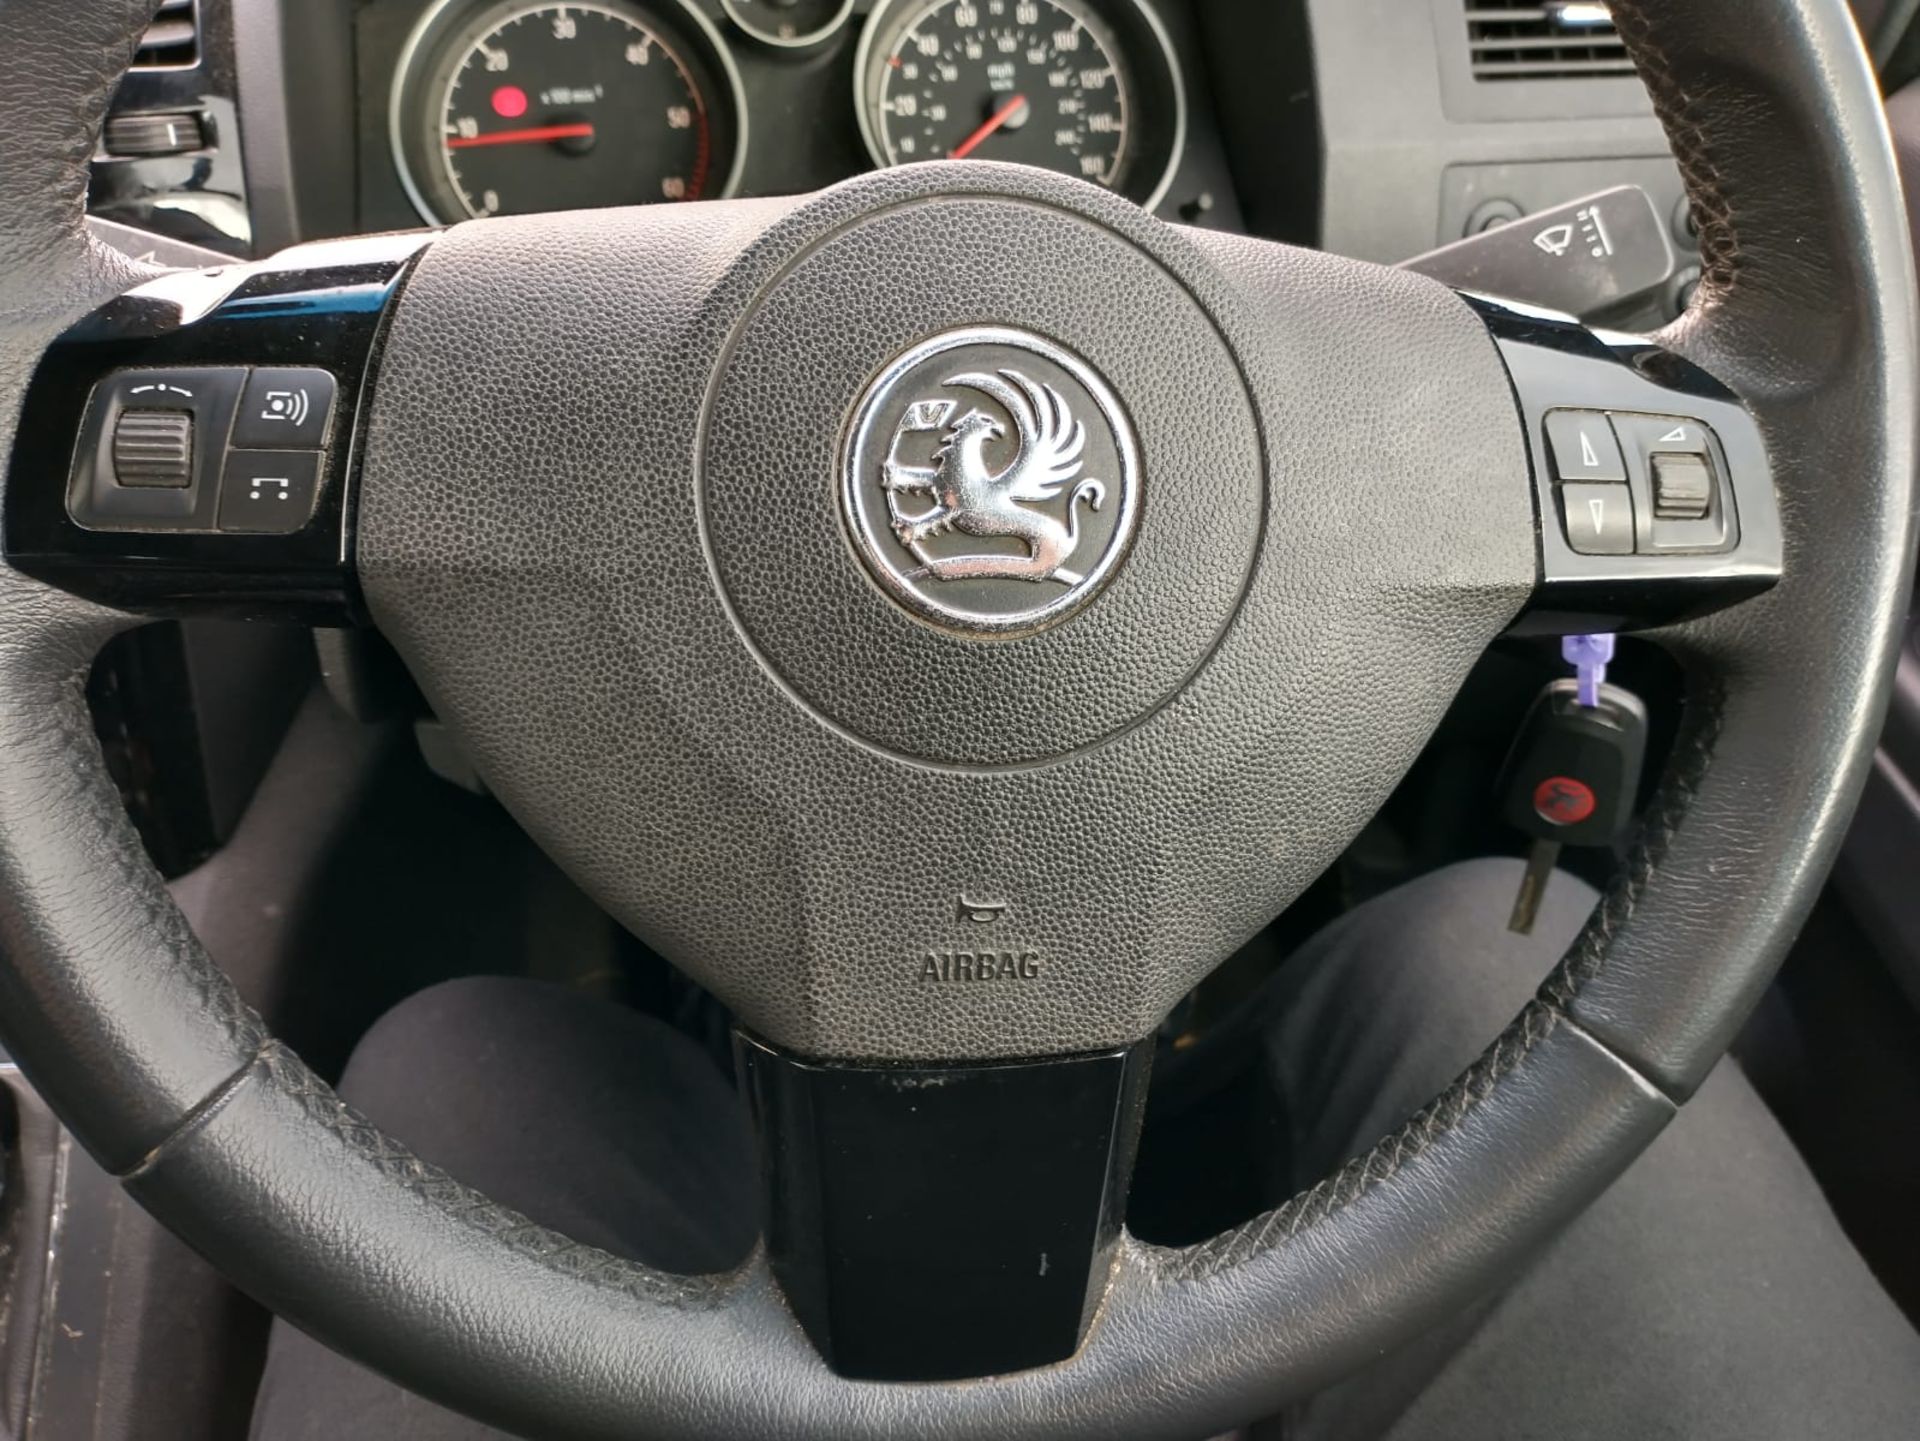 2011 Vauxhall Zafira Elite Cdti 1.7 5Dr MPV - Image 9 of 16